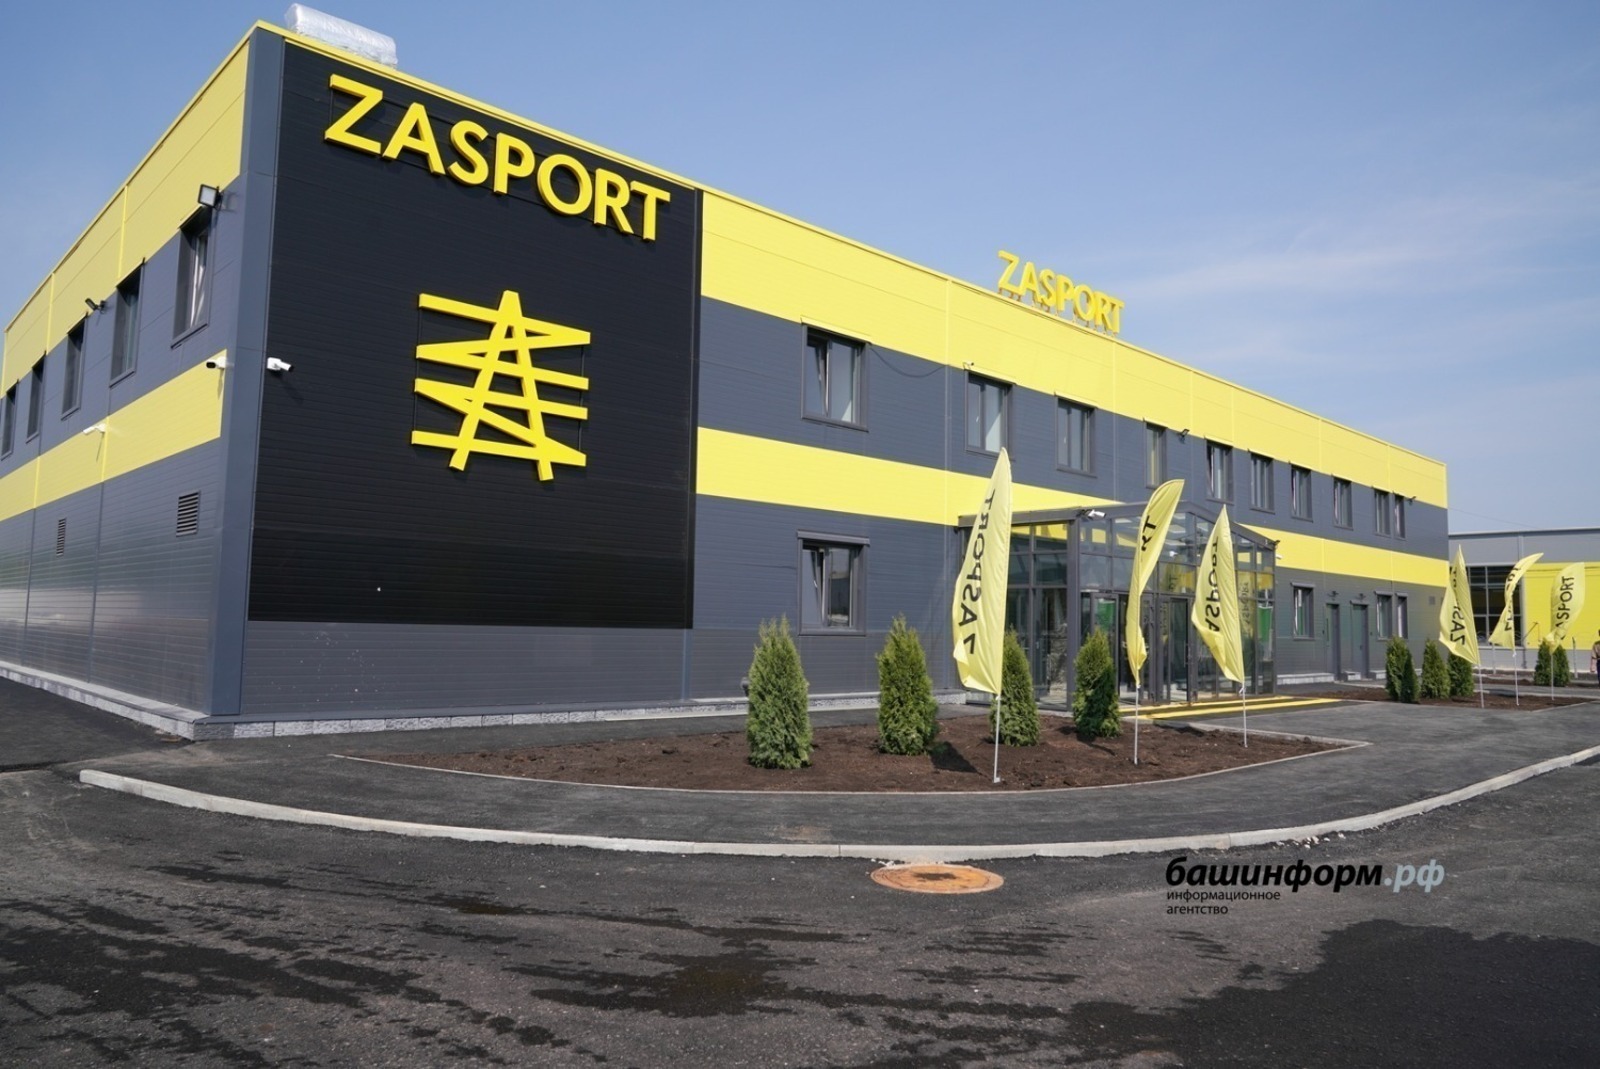 Как оценивают эксперты открытие фабрики Zasport в Башкирии